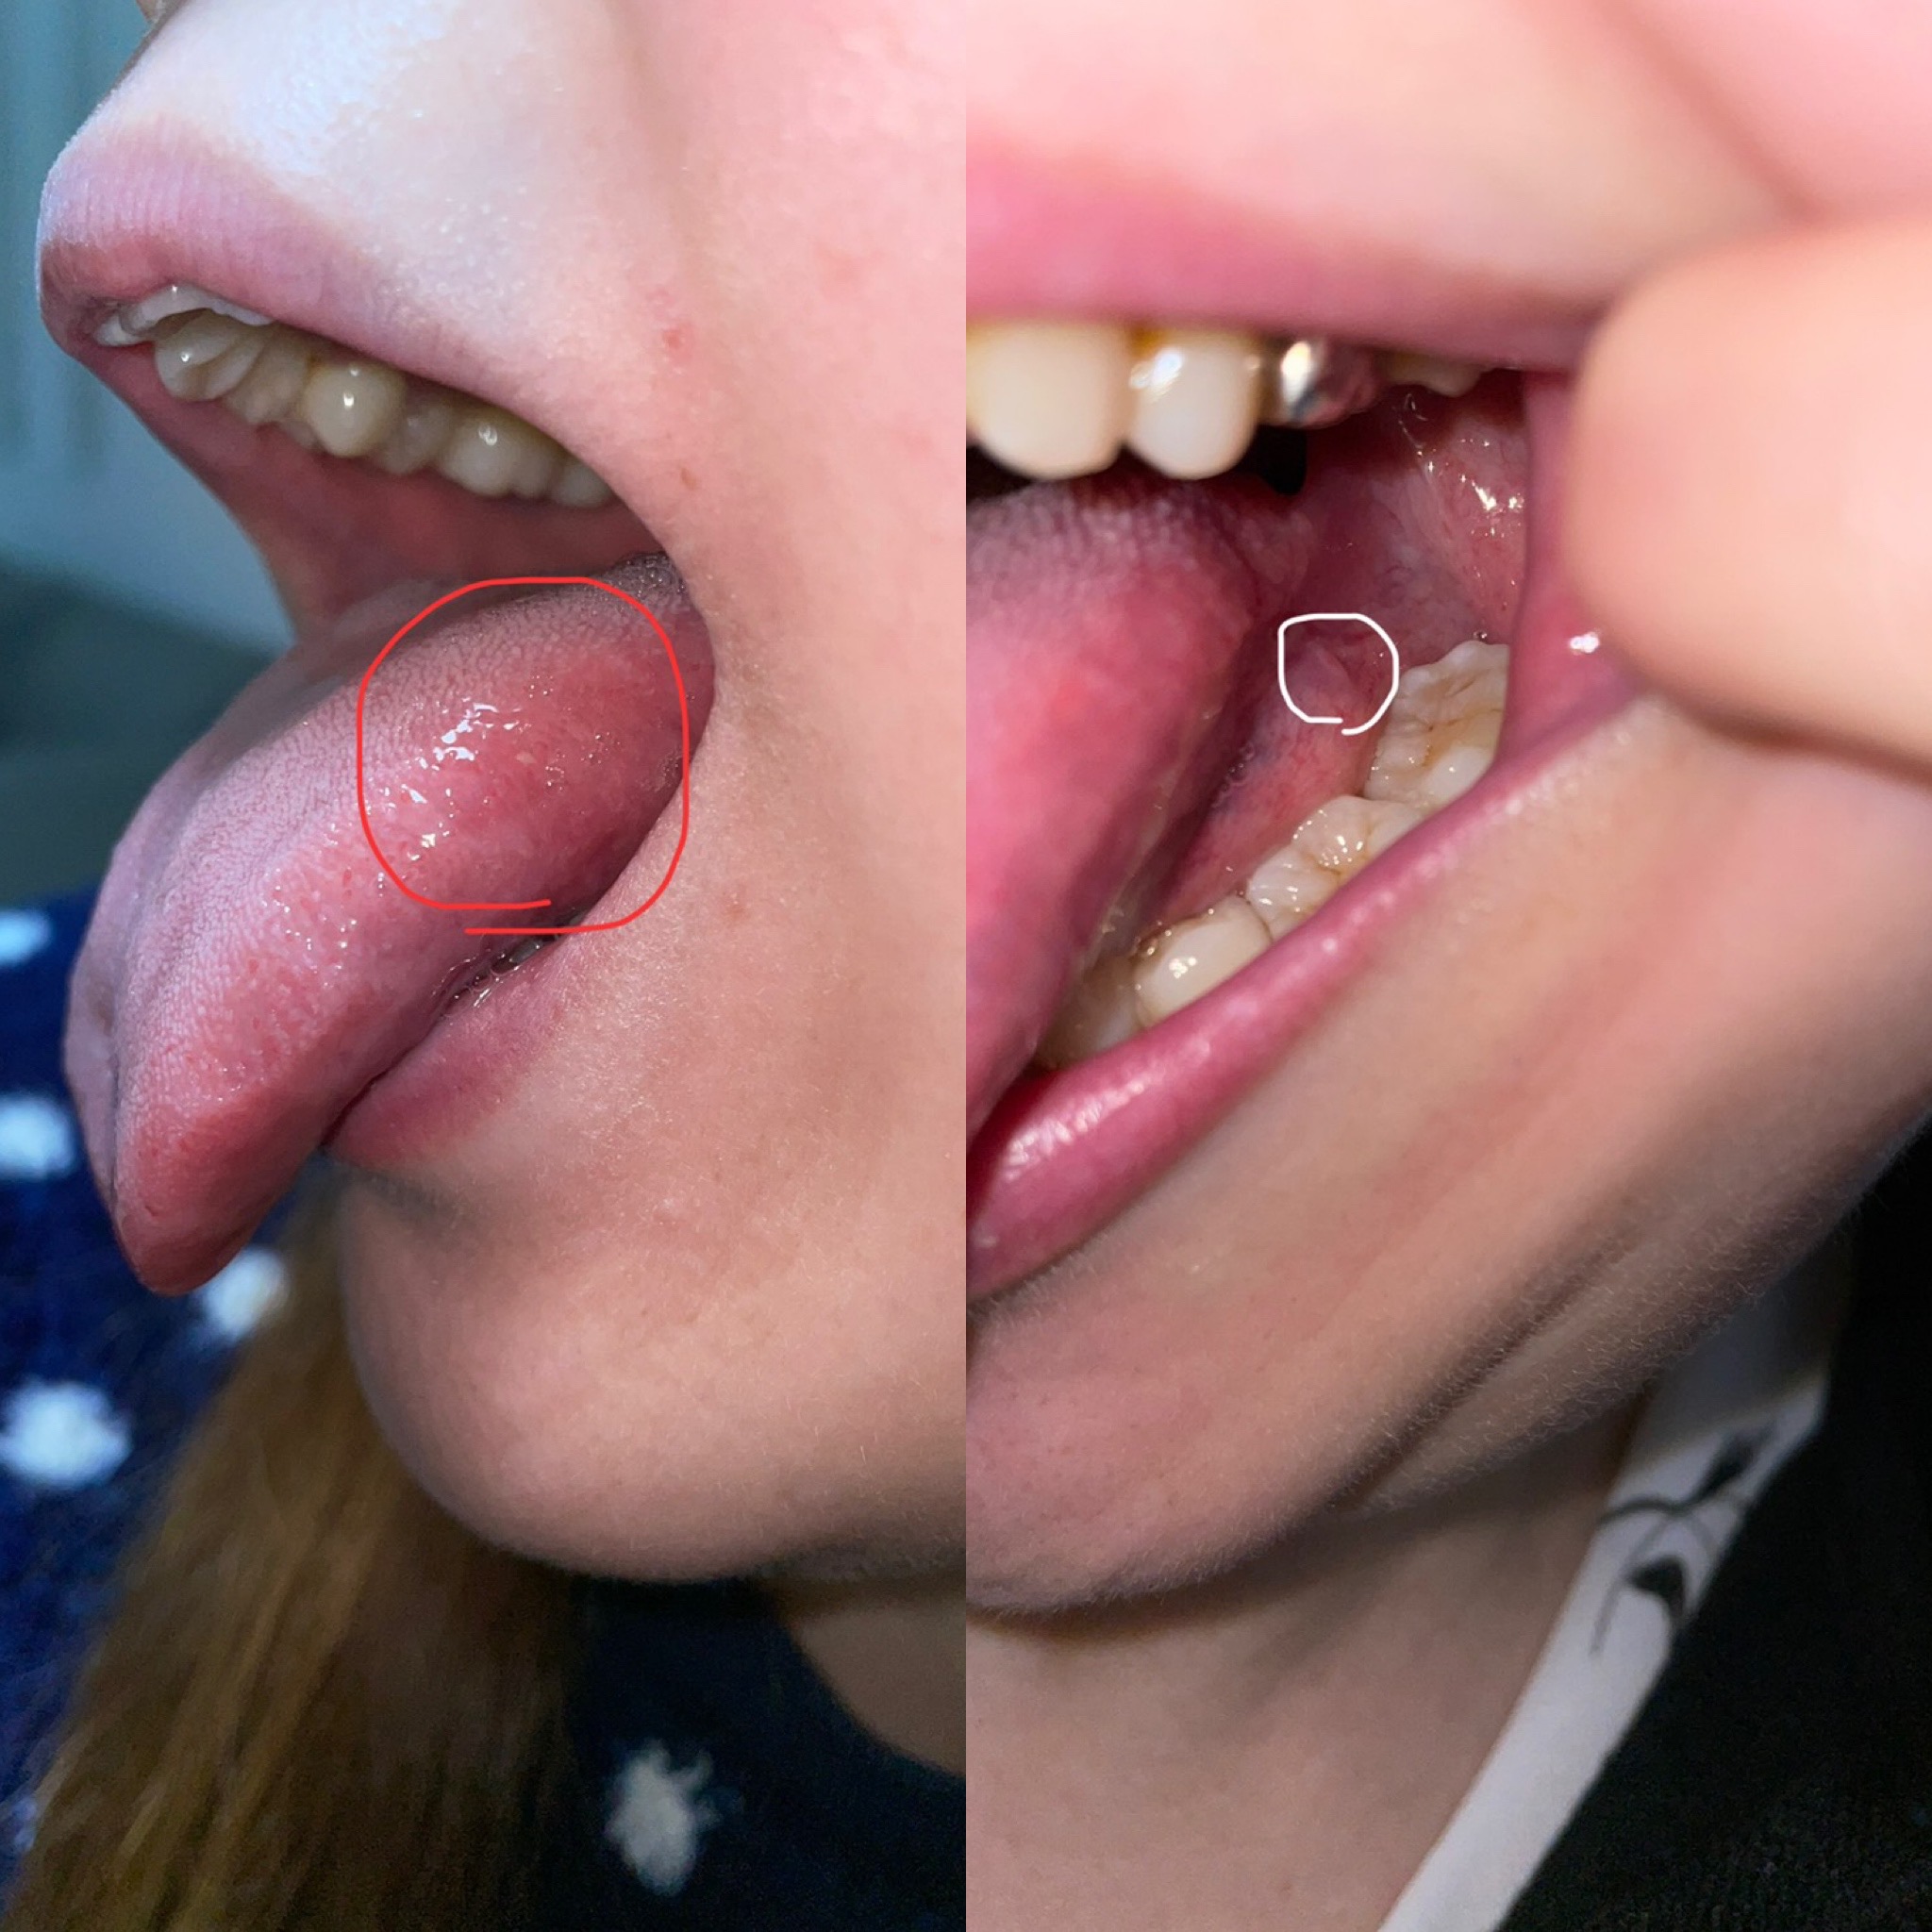 口腔癌 舌癌 かもとこわいです 口腔外科 Com 提供は安原歯科医院